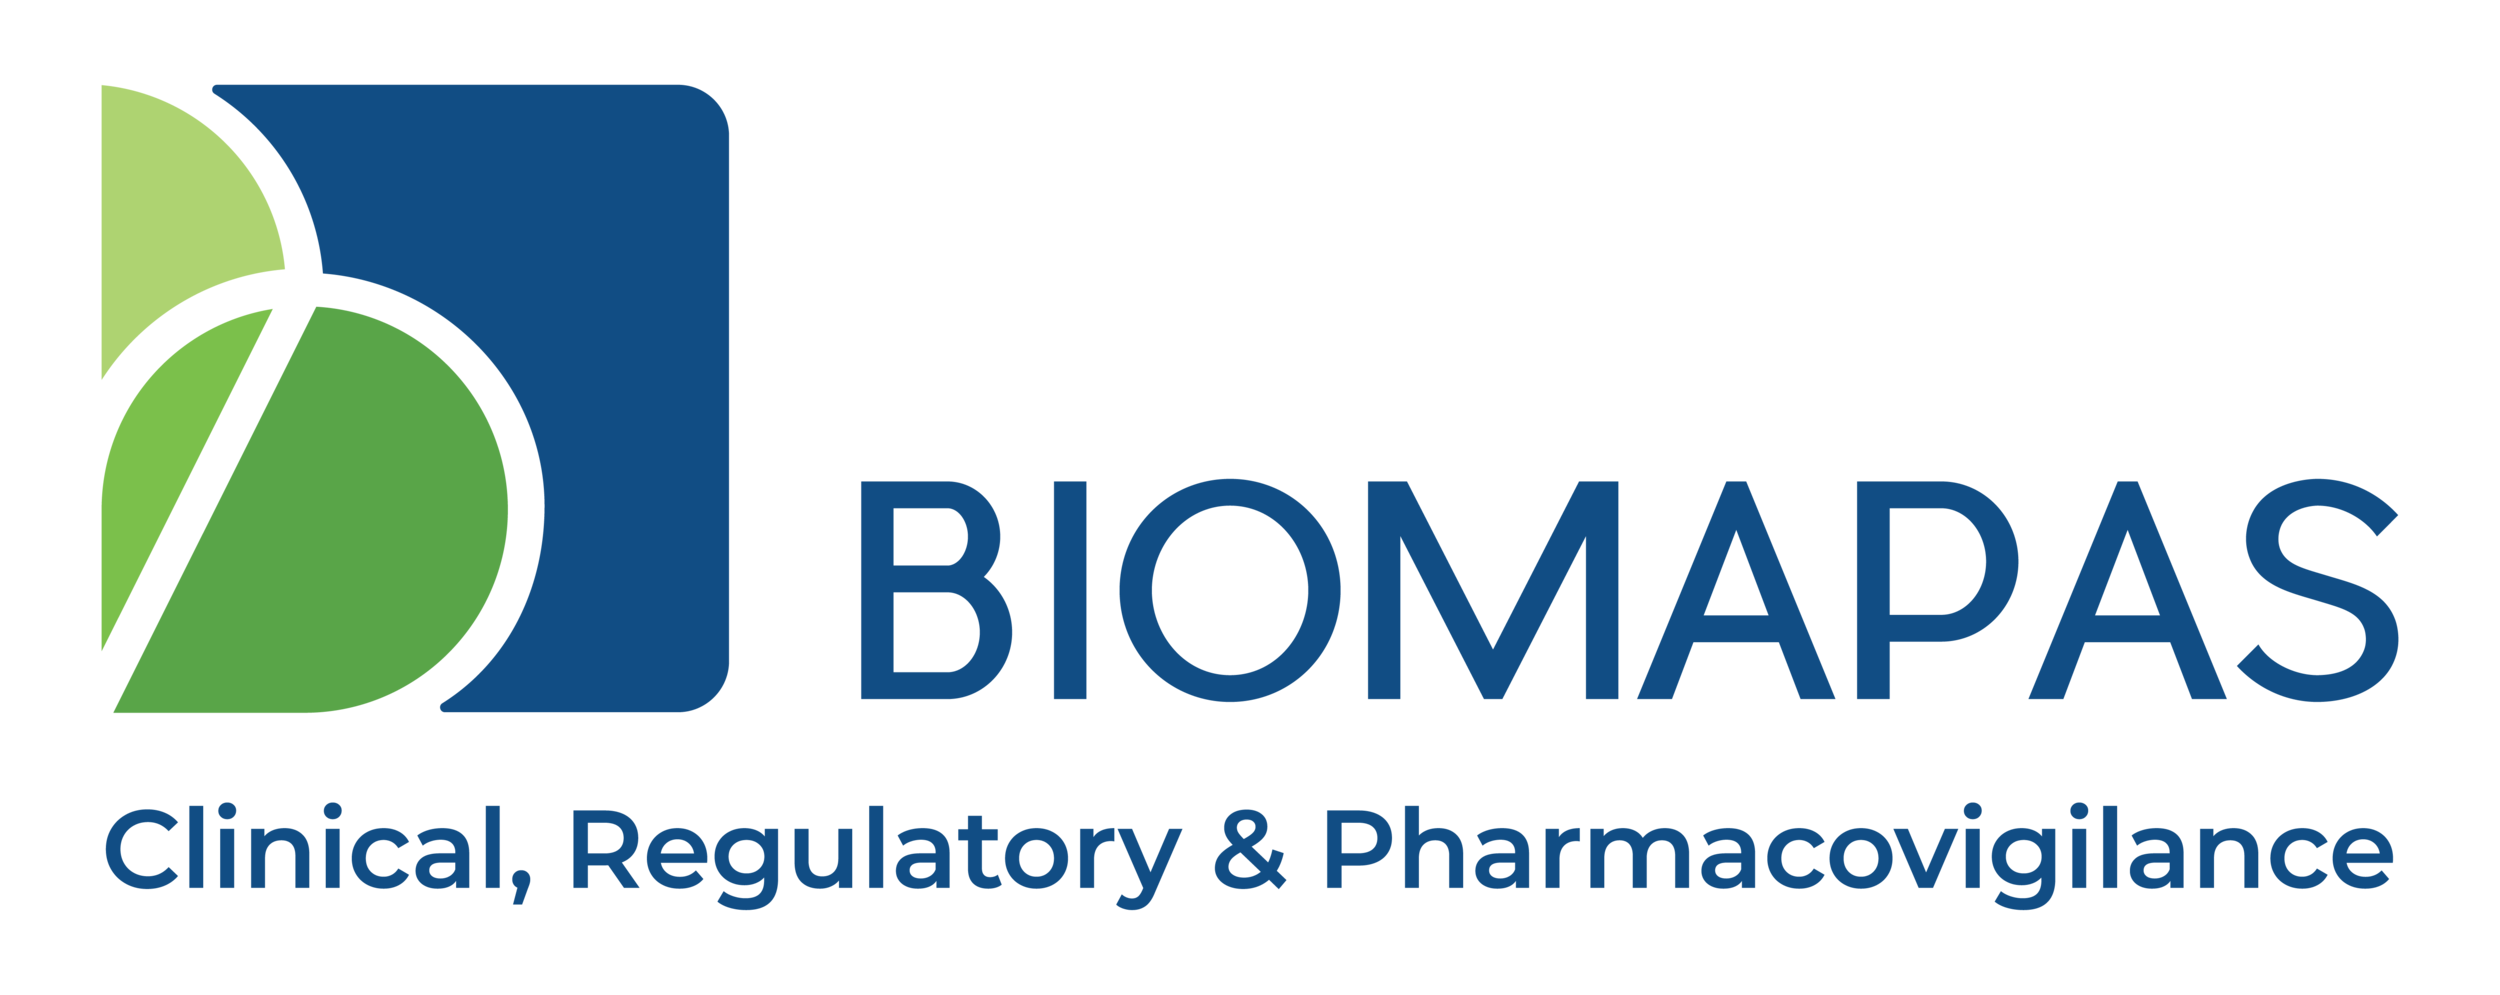 Biomapas Logo Clinical, Regulatory & Pharmacovigilance-01.png